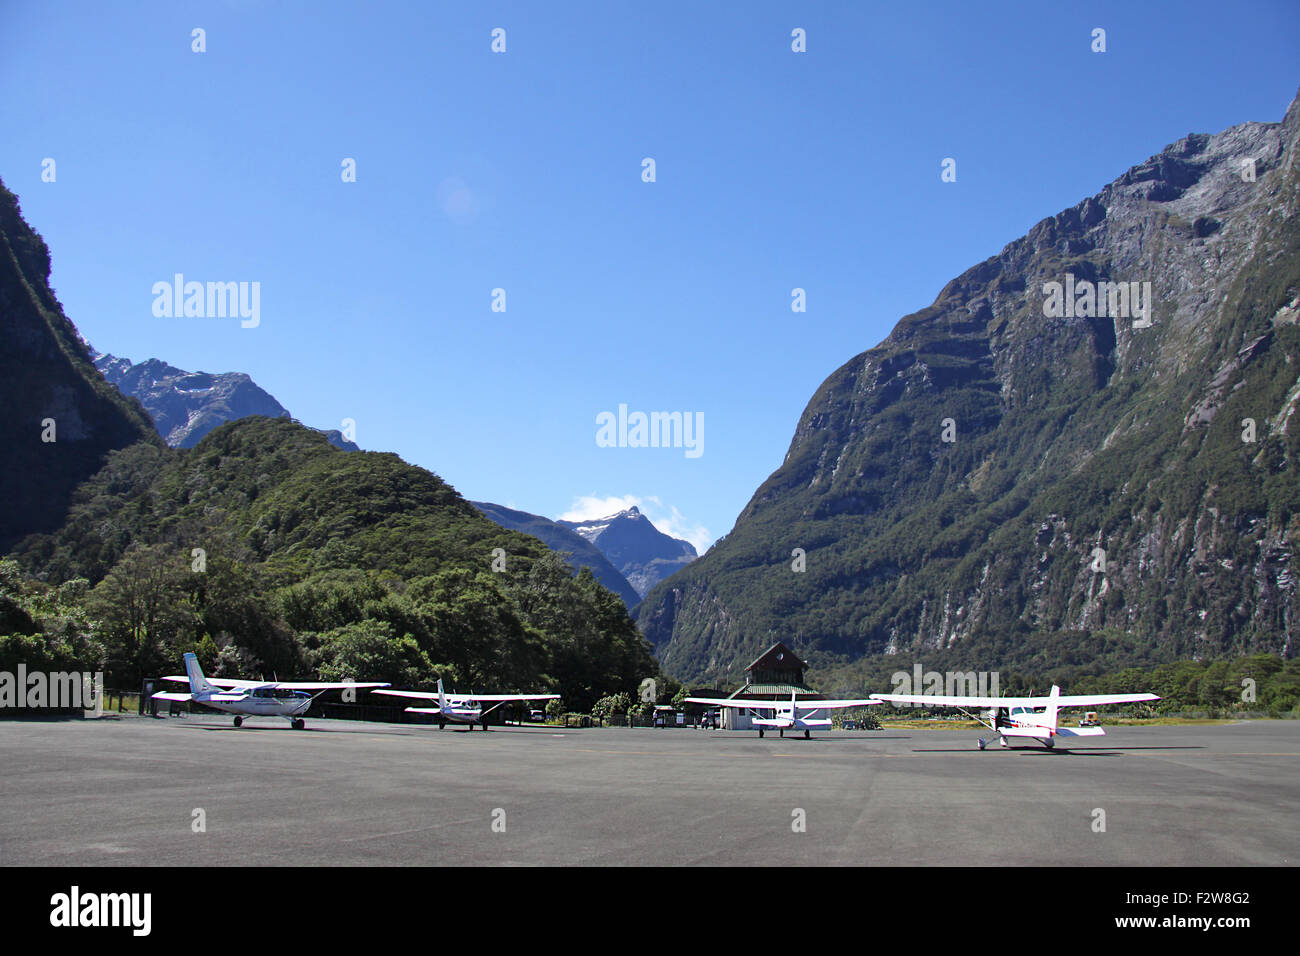 De petits avions sur la piste de l'aéroport, Milford Sound, NPF, NZMF dans Milford Sound, Nouvelle Zélande Banque D'Images